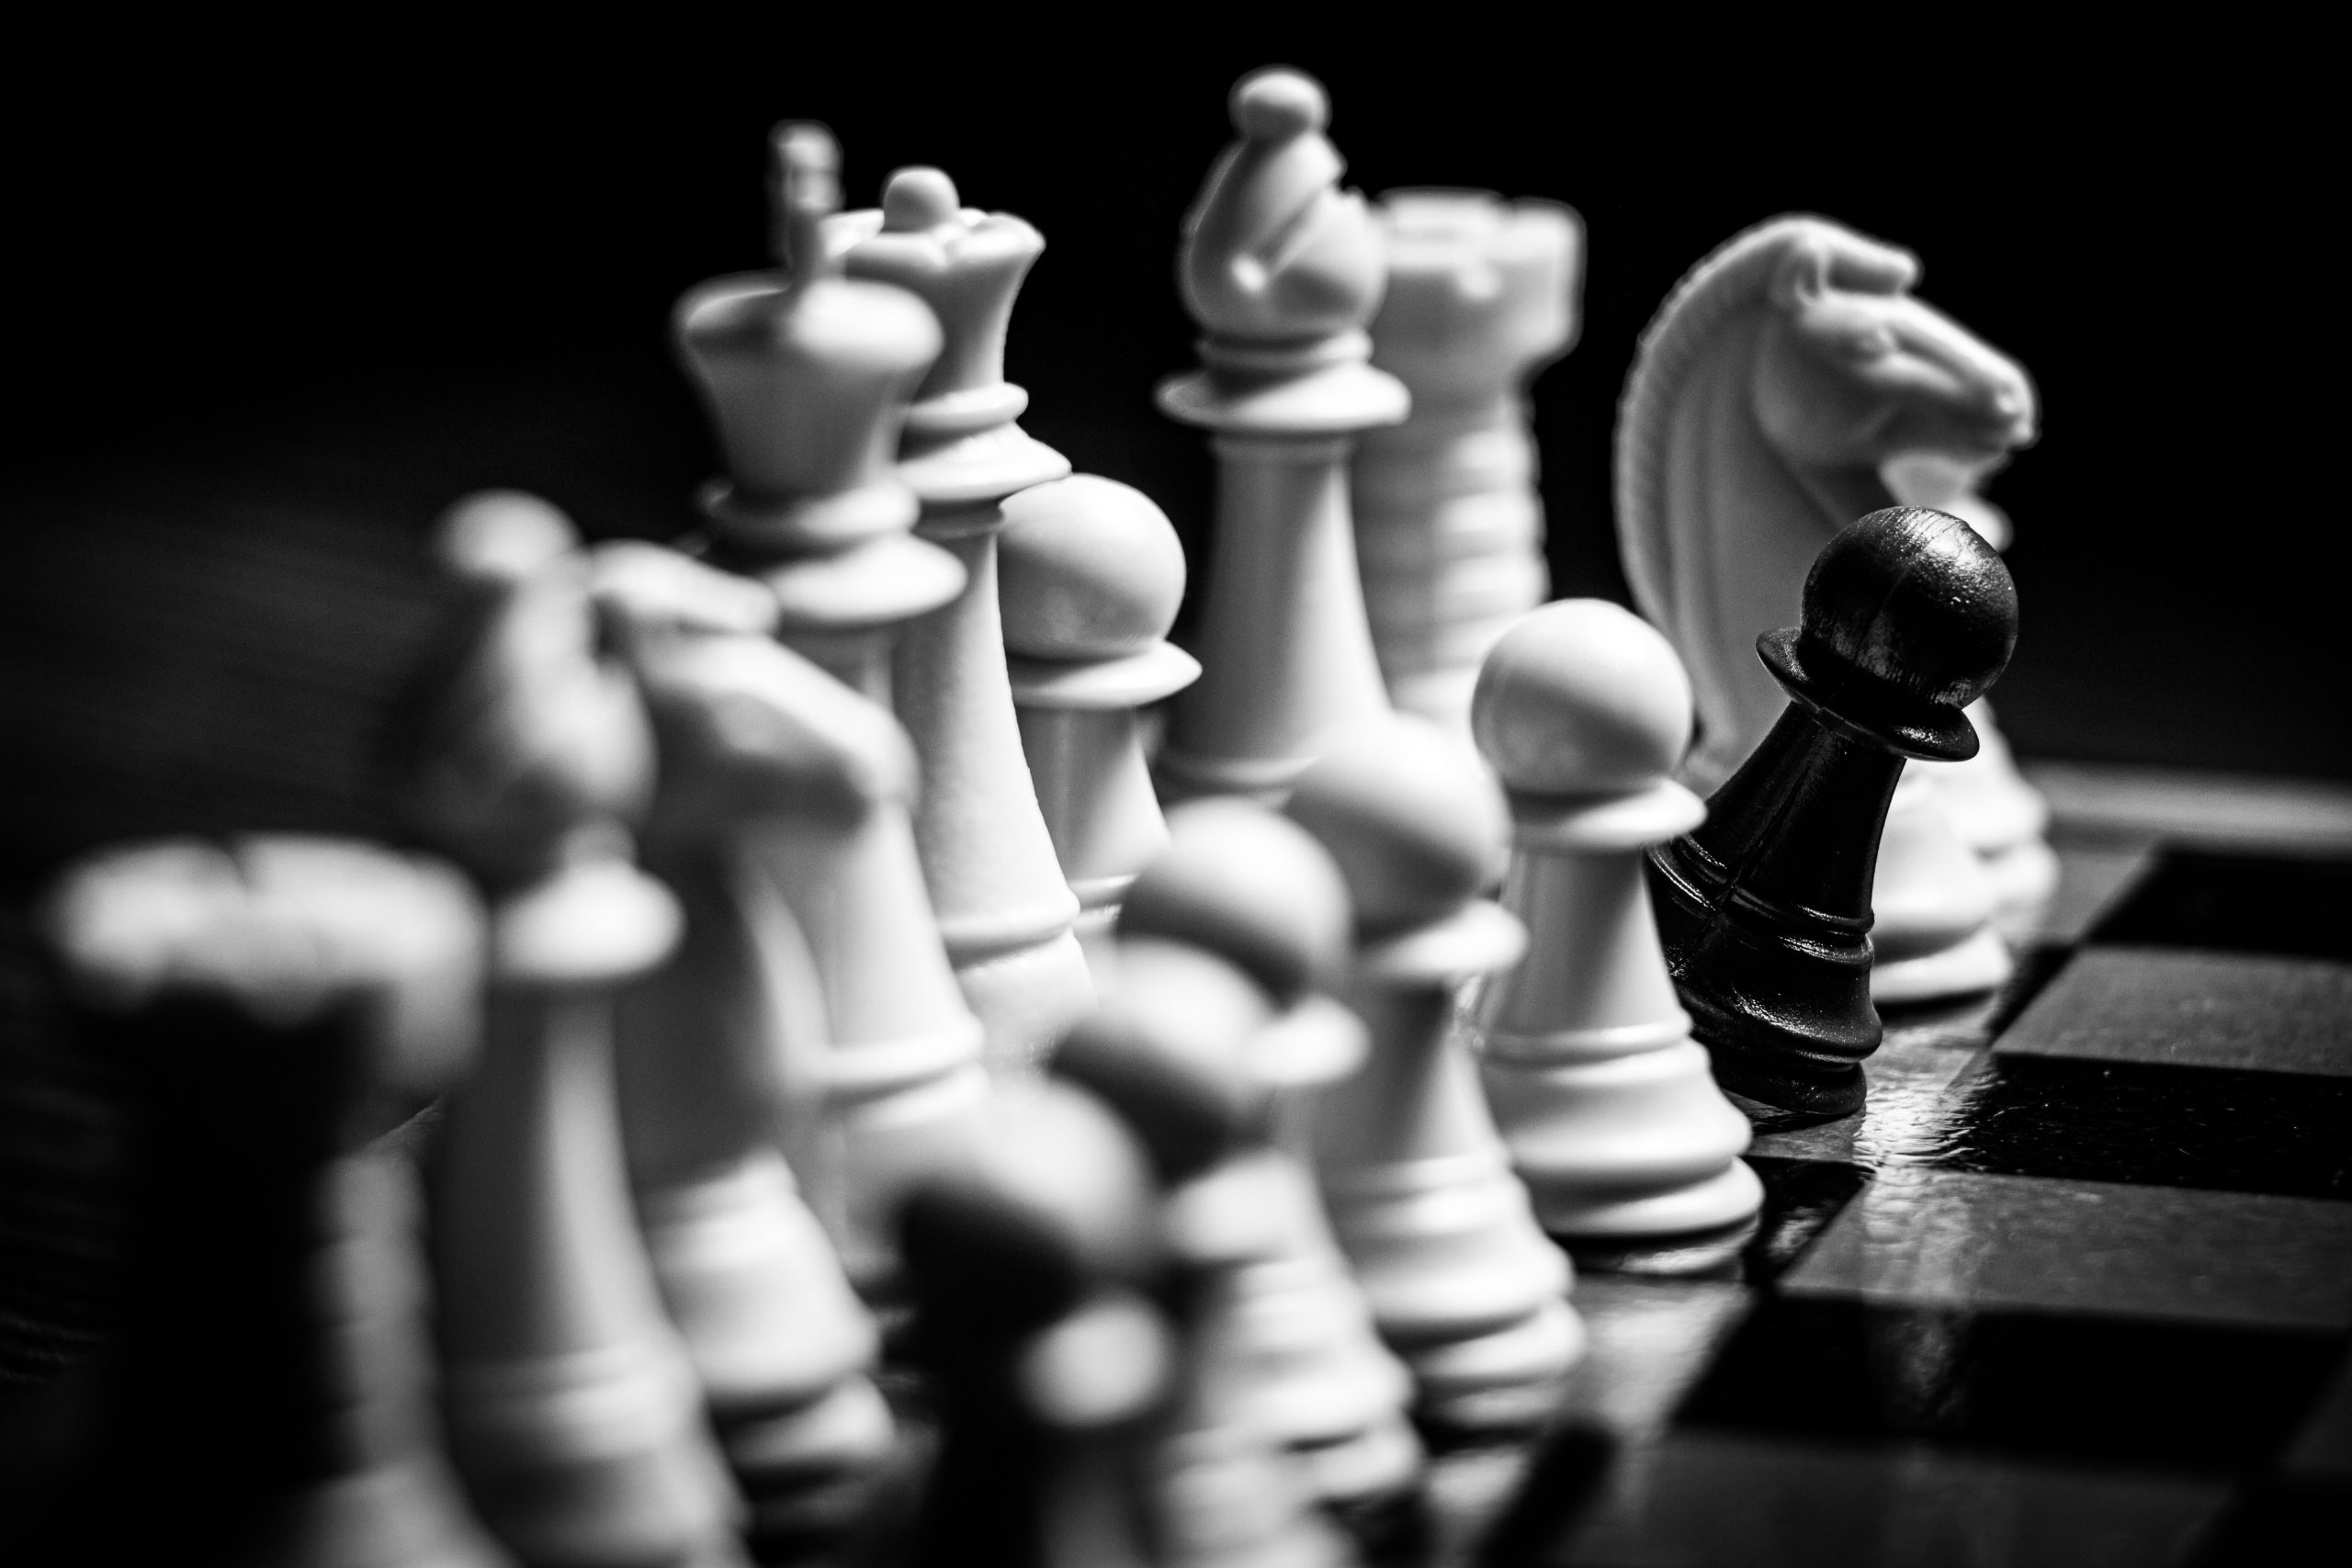 Italian Game - Chess Opening Analysis